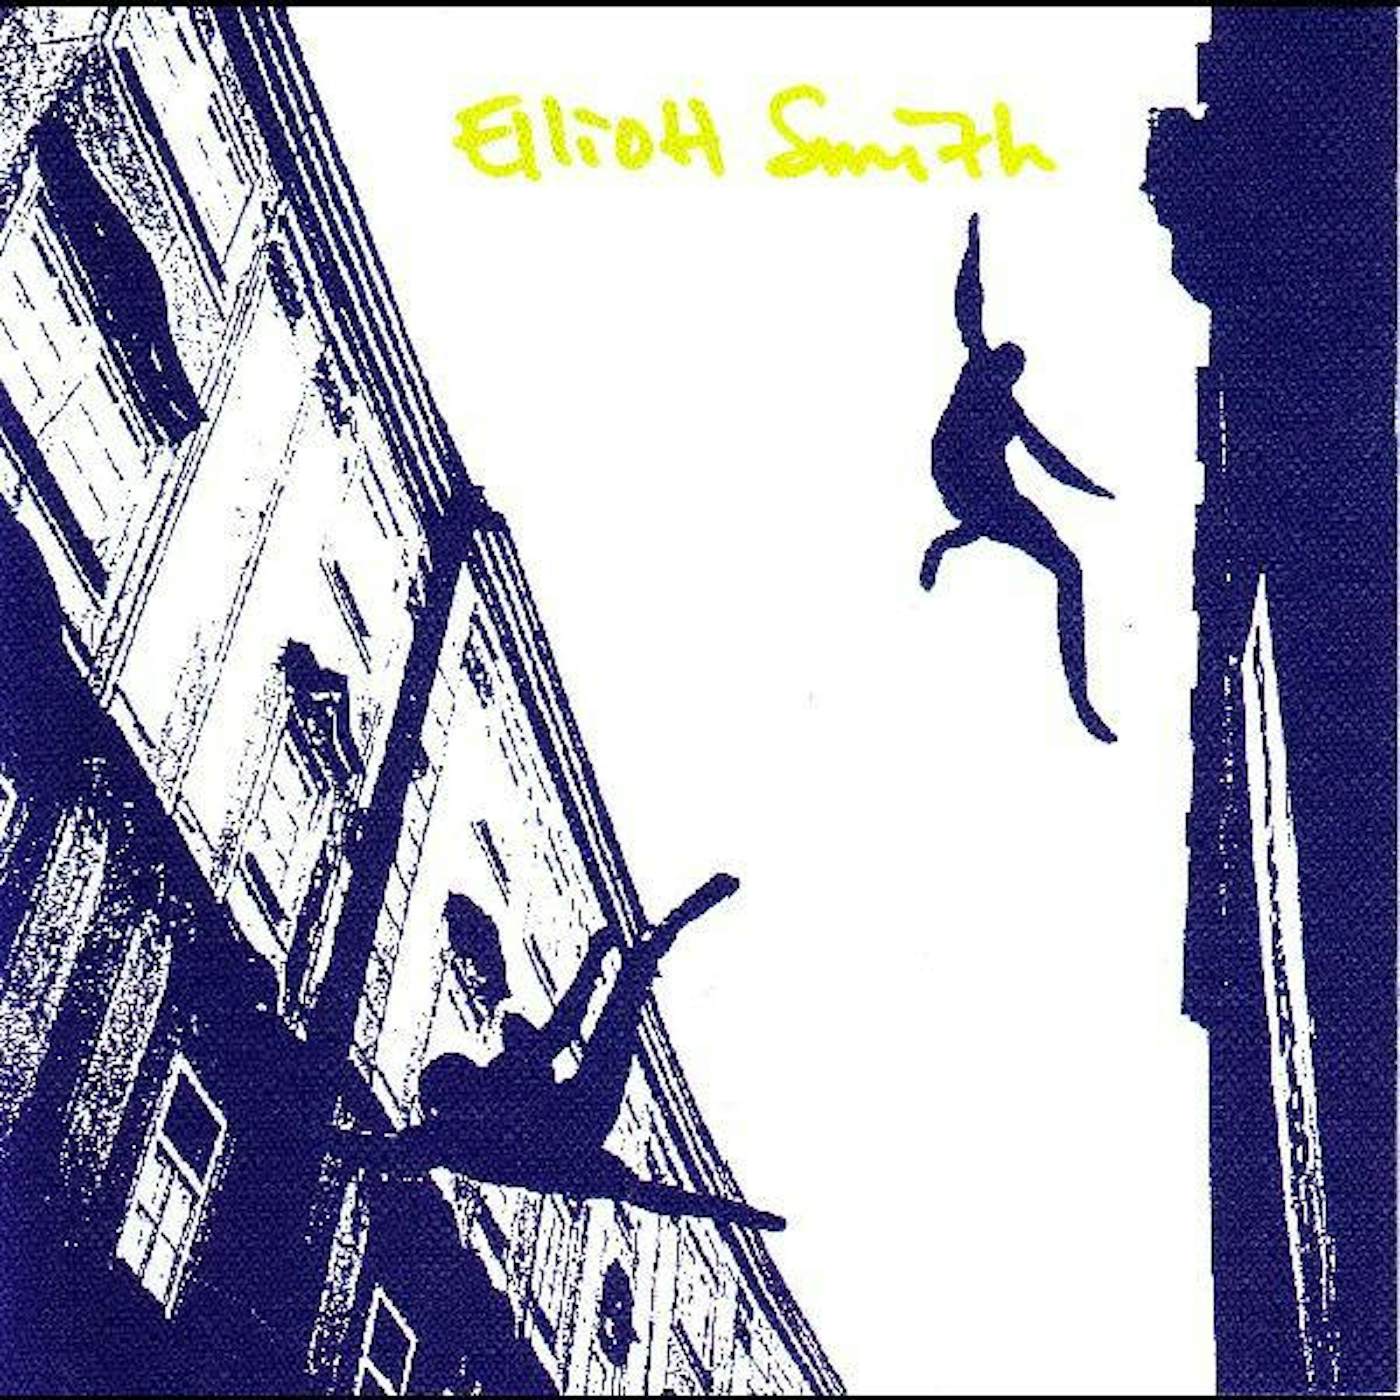 ELLIOTT SMITH (25TH ANNIVERSARY REMASTER/DL CARD) Vinyl Record